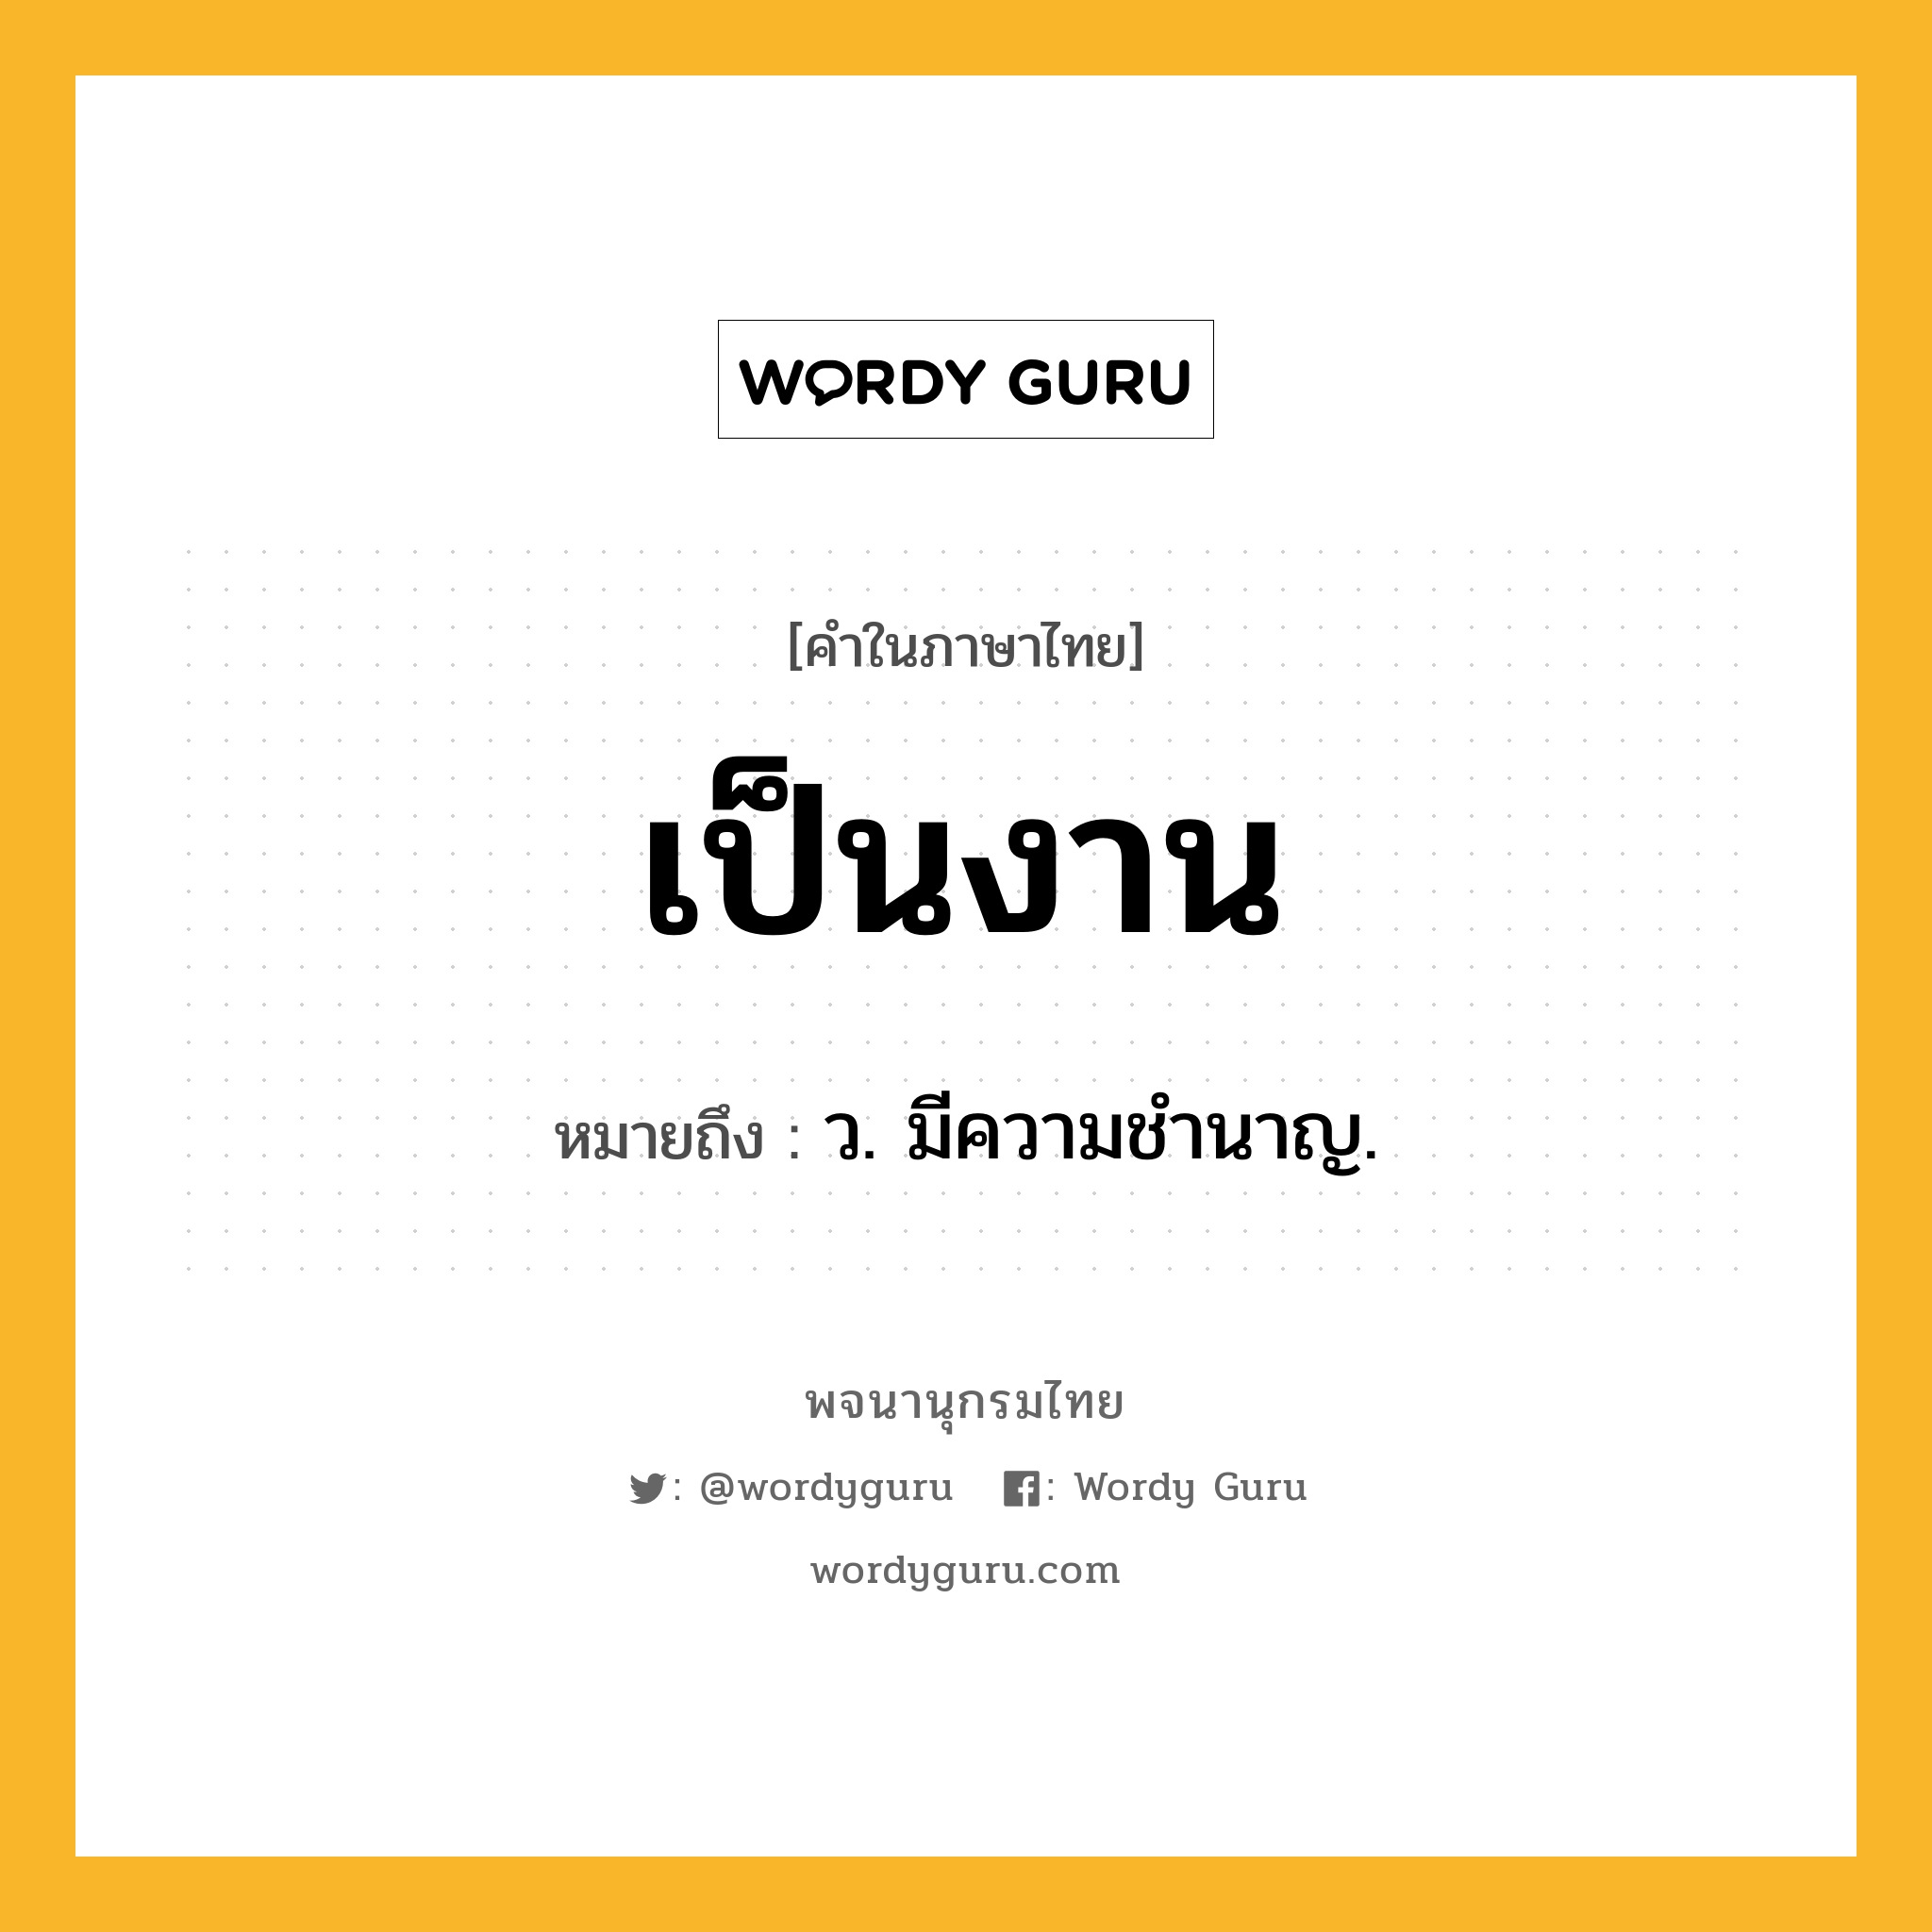 เป็นงาน ความหมาย หมายถึงอะไร?, คำในภาษาไทย เป็นงาน หมายถึง ว. มีความชำนาญ.